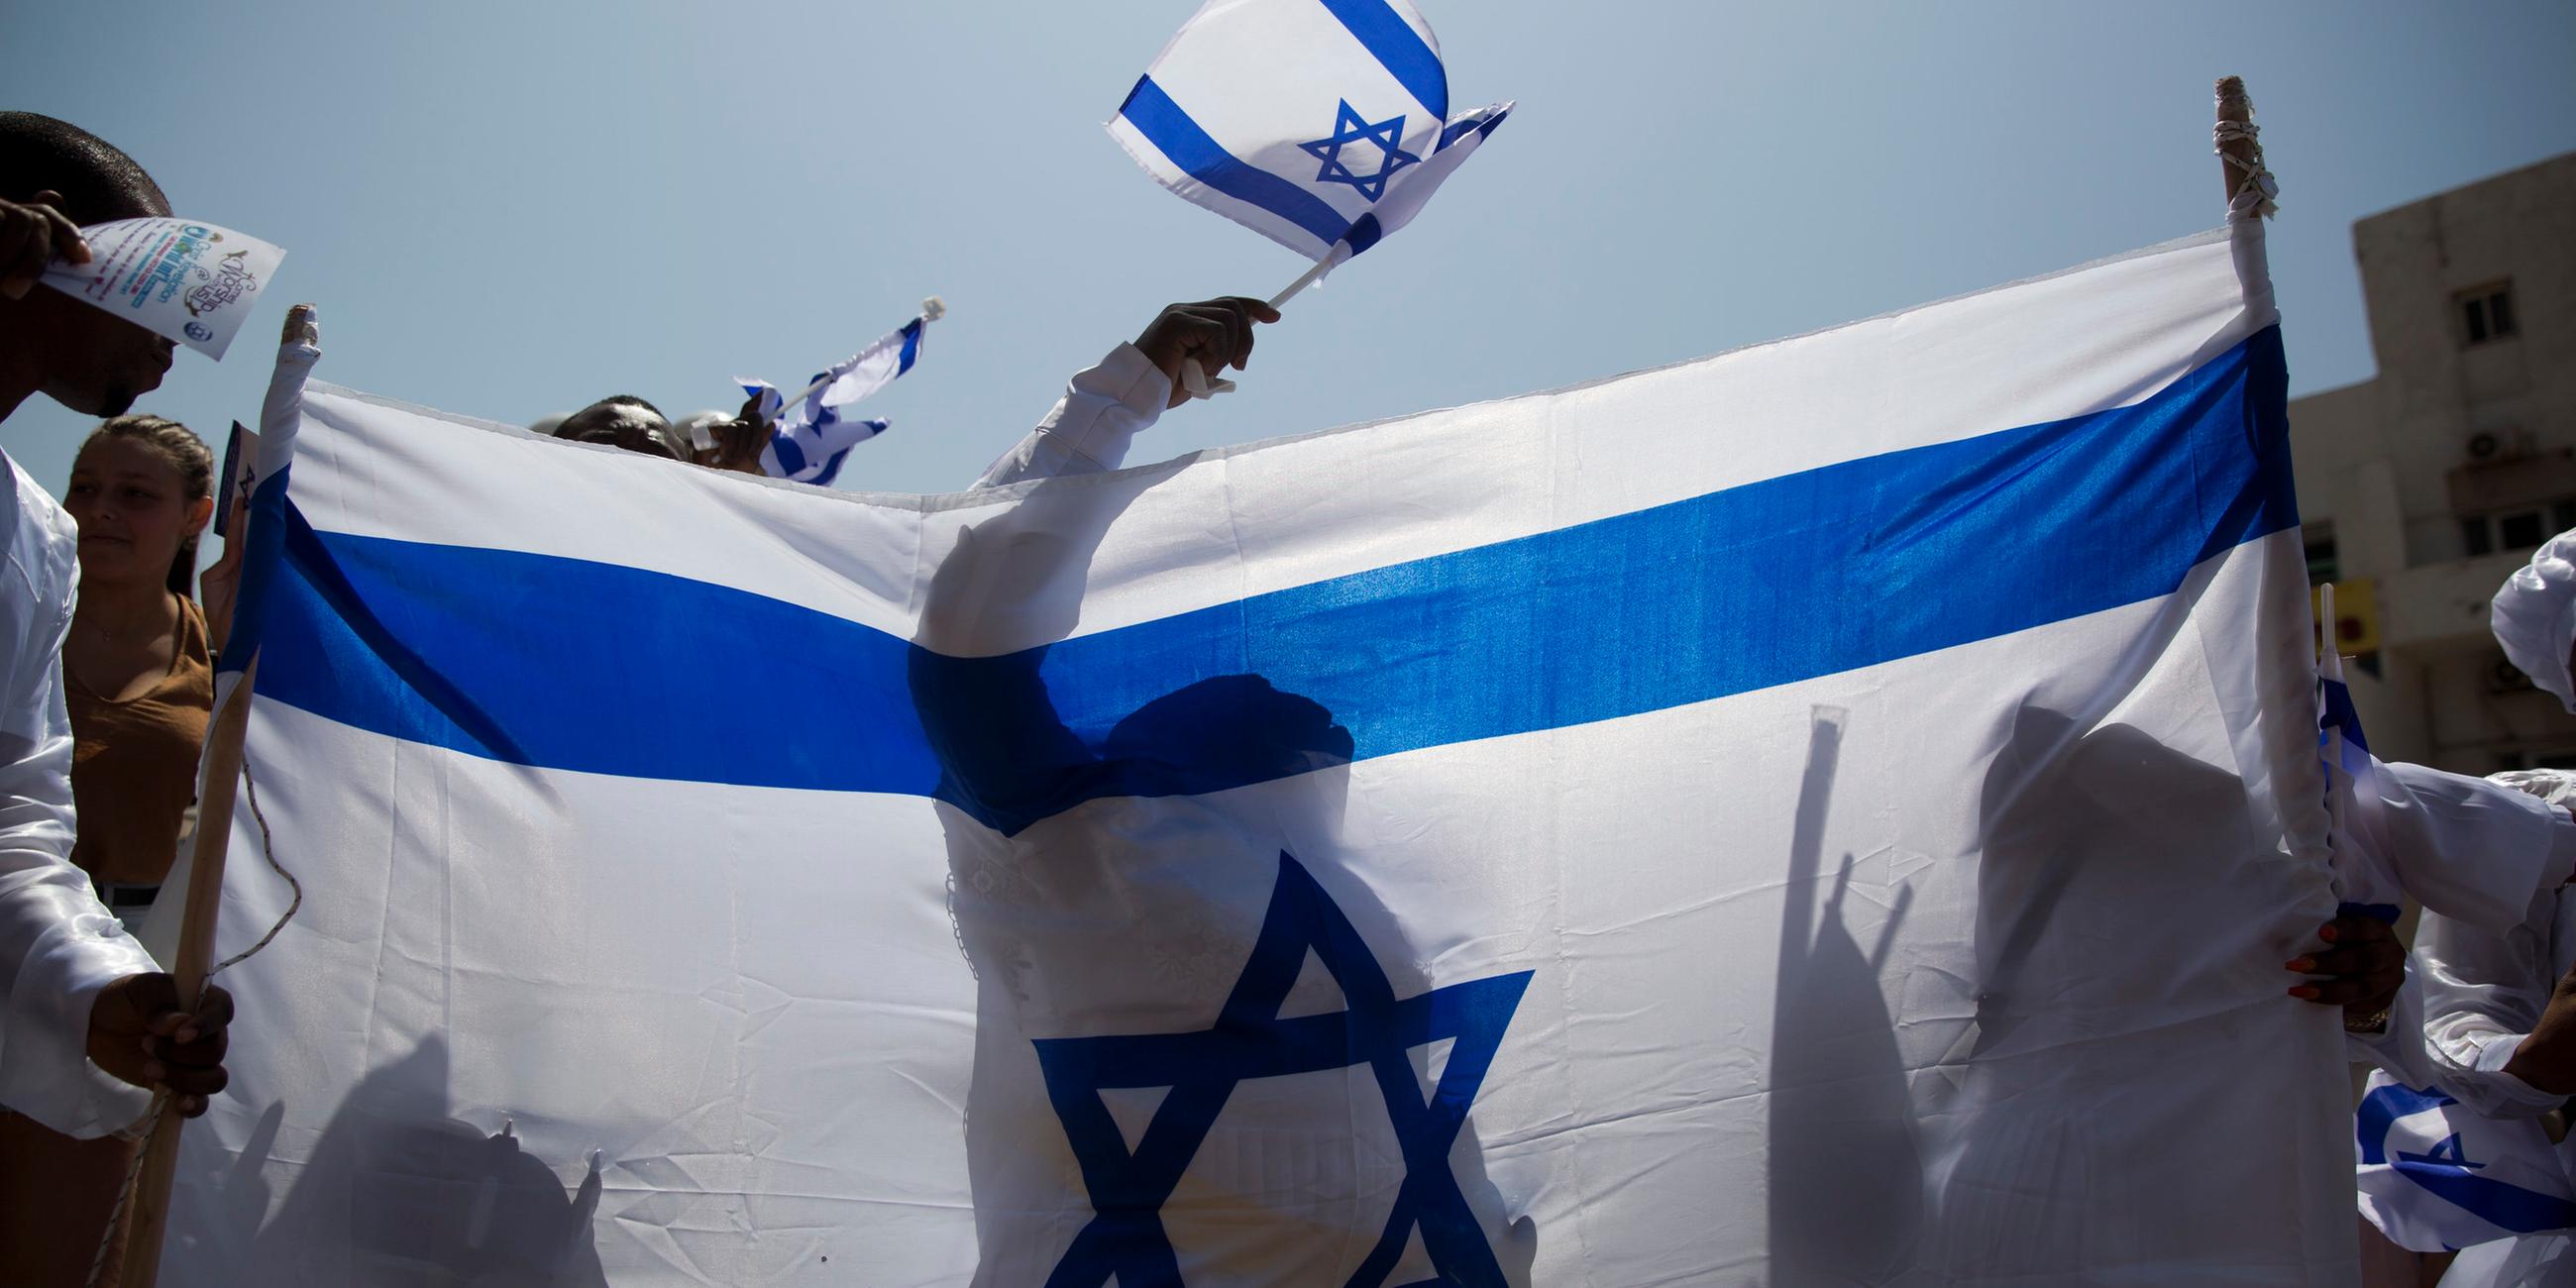 Feiern zum Unabhängigkeitstag in Israel - Flaggen wehen im Wind (Archivbild)